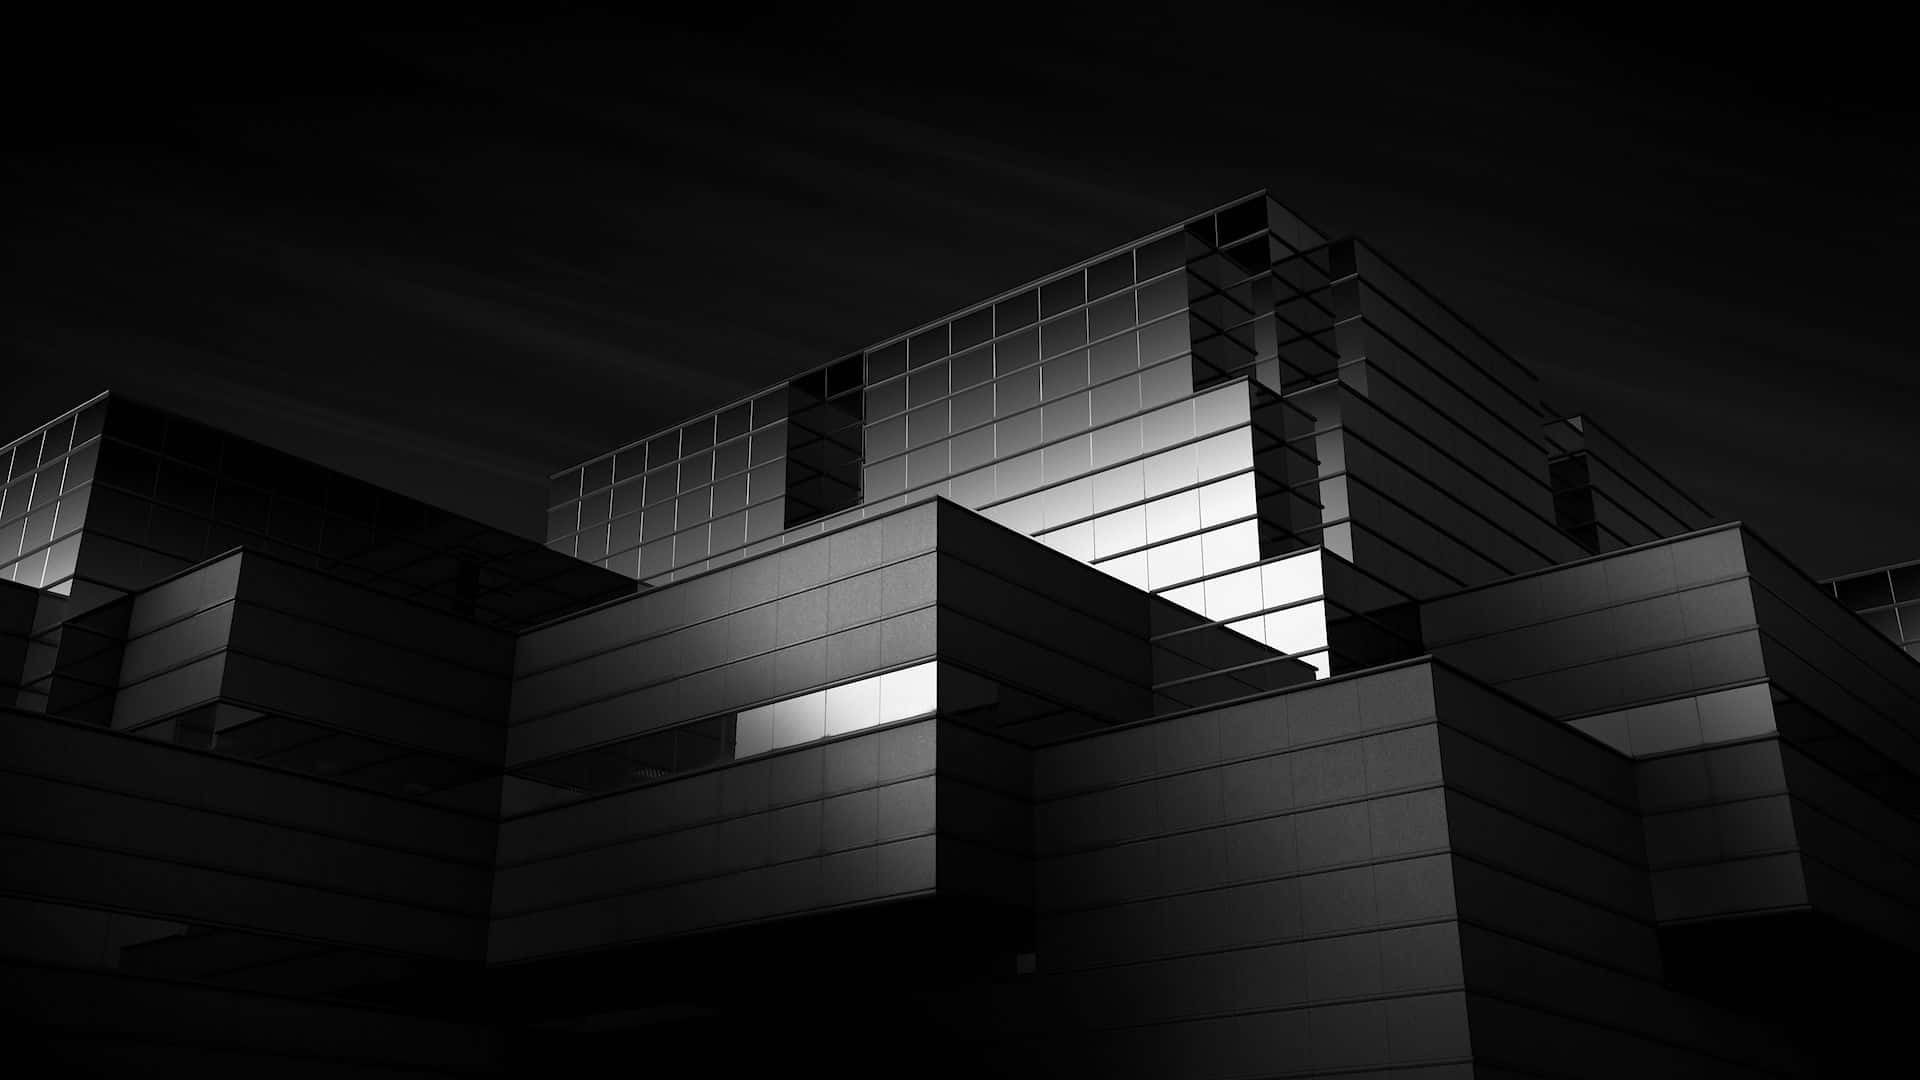 Impresionantediseño Arquitectónico En Blanco Y Negro. Fondo de pantalla